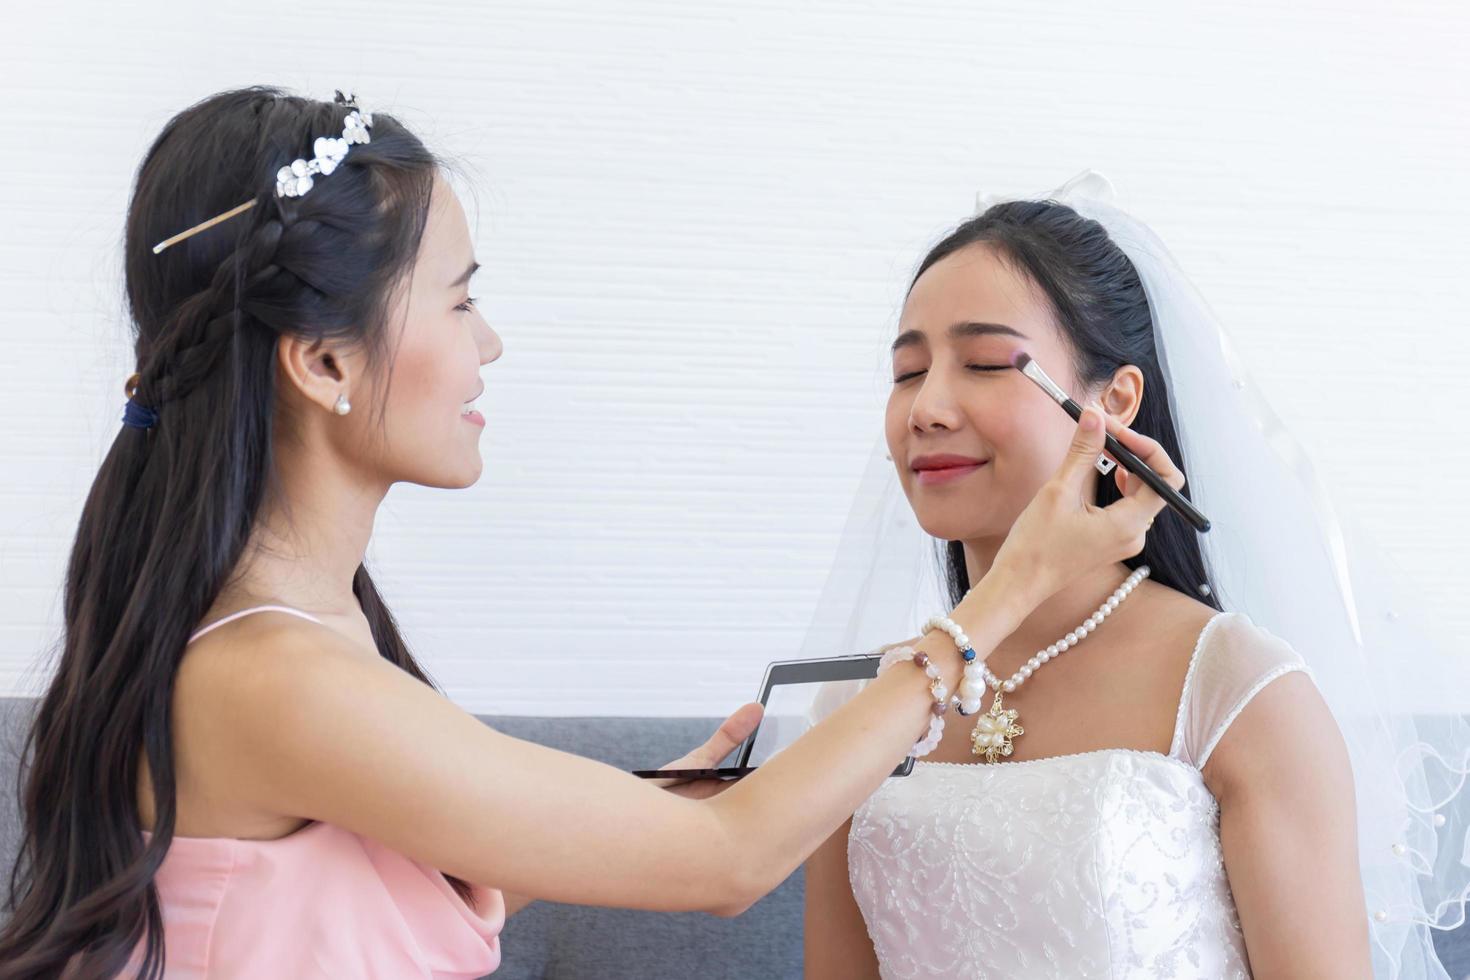 une maquilleuse maquille une mariée asiatique pour son mariage. photo